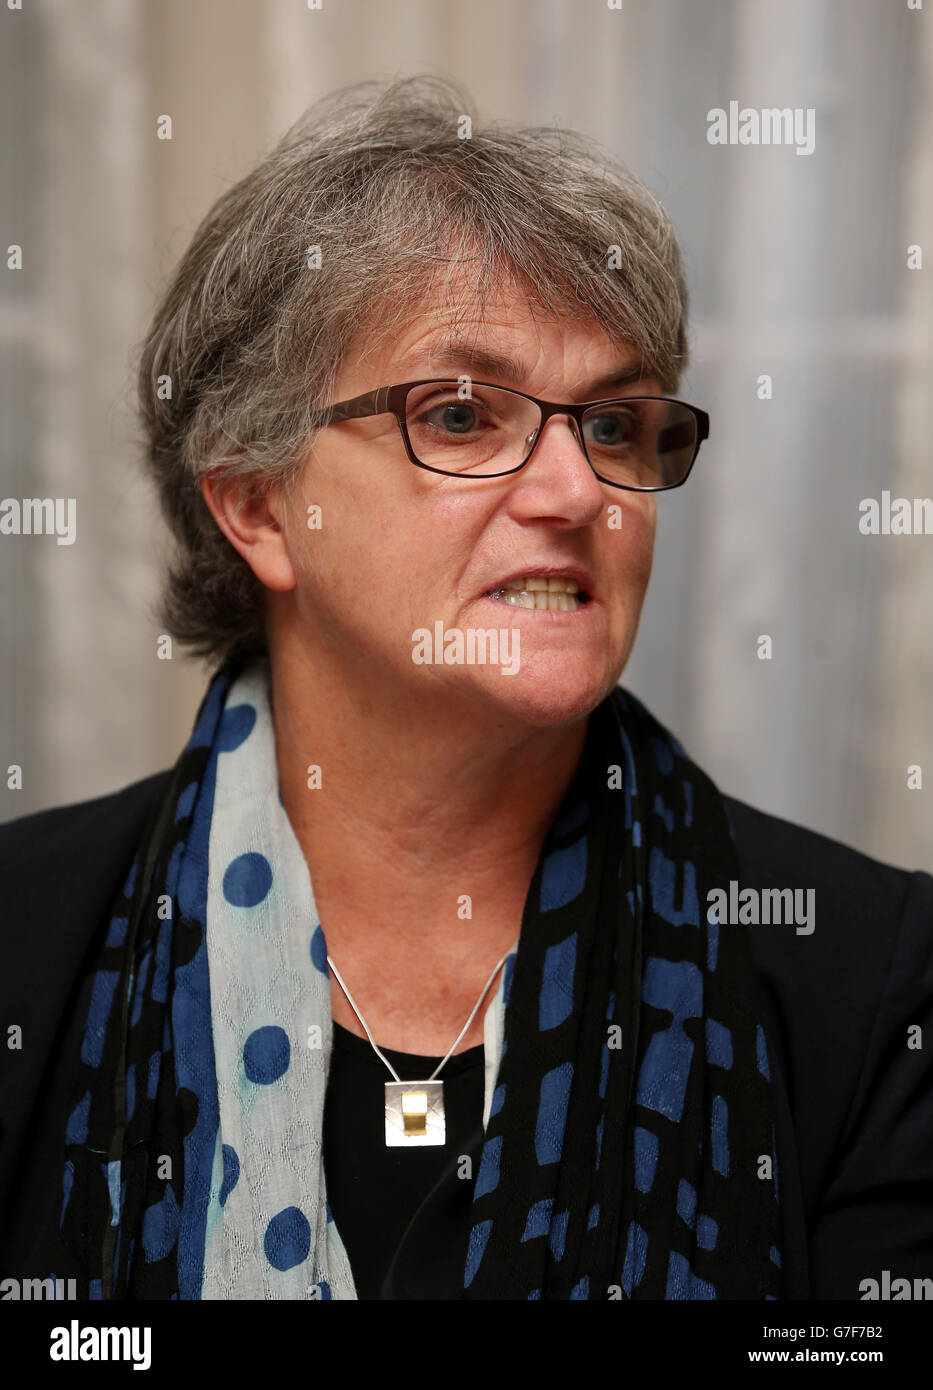 TUI-Mitglied Helen Mahony beim Start einer Kampagne zur Unterstützung eines Referendums zur Aufhebung des 8. Abtreibungsamendments. Stockfoto